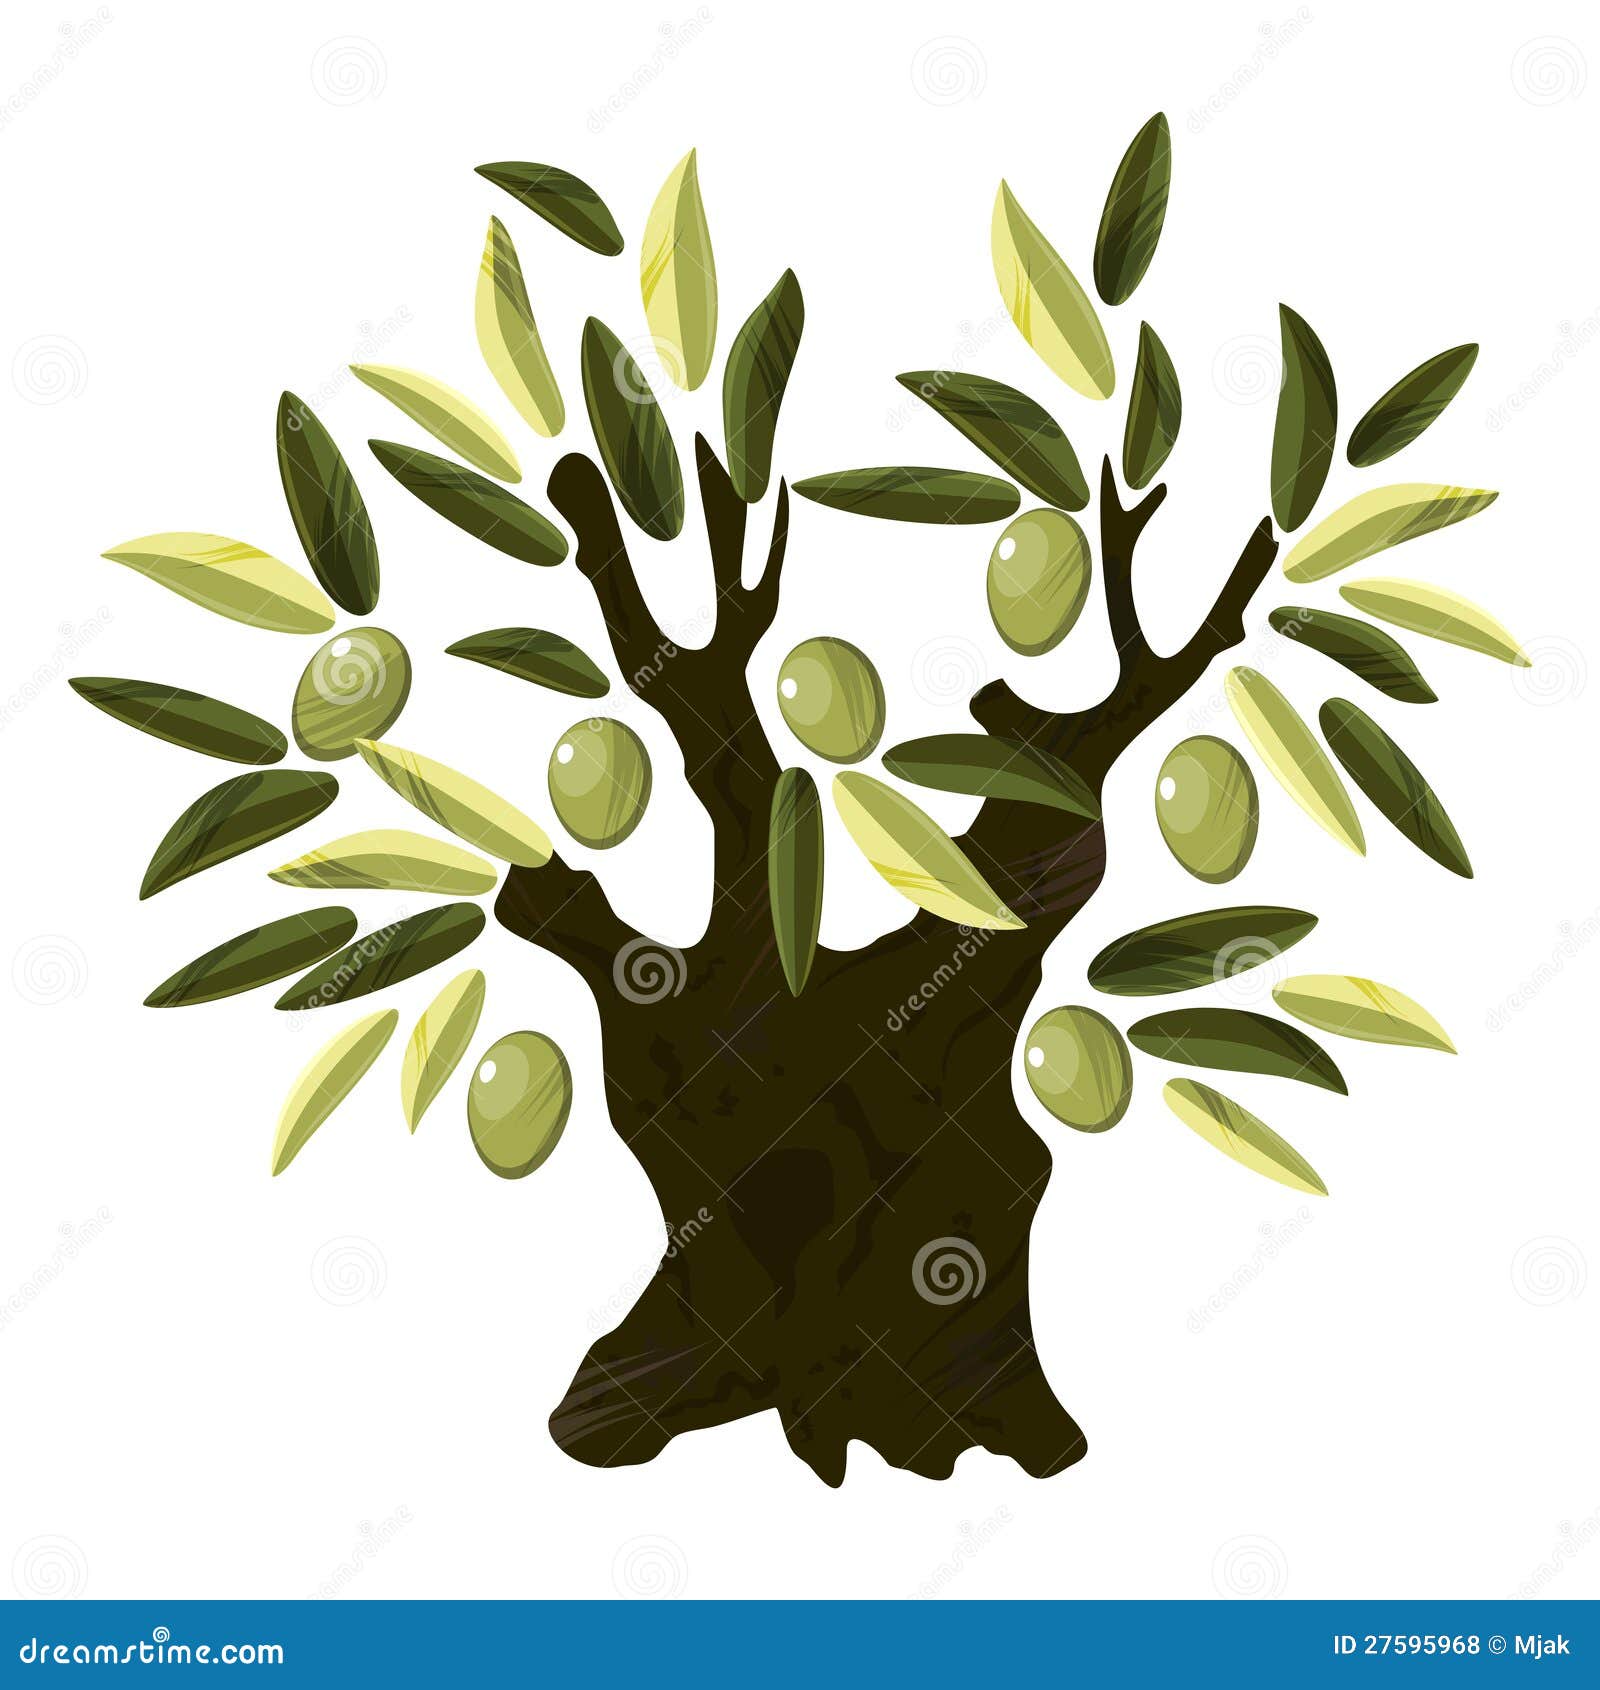 clip art olive tree - photo #44